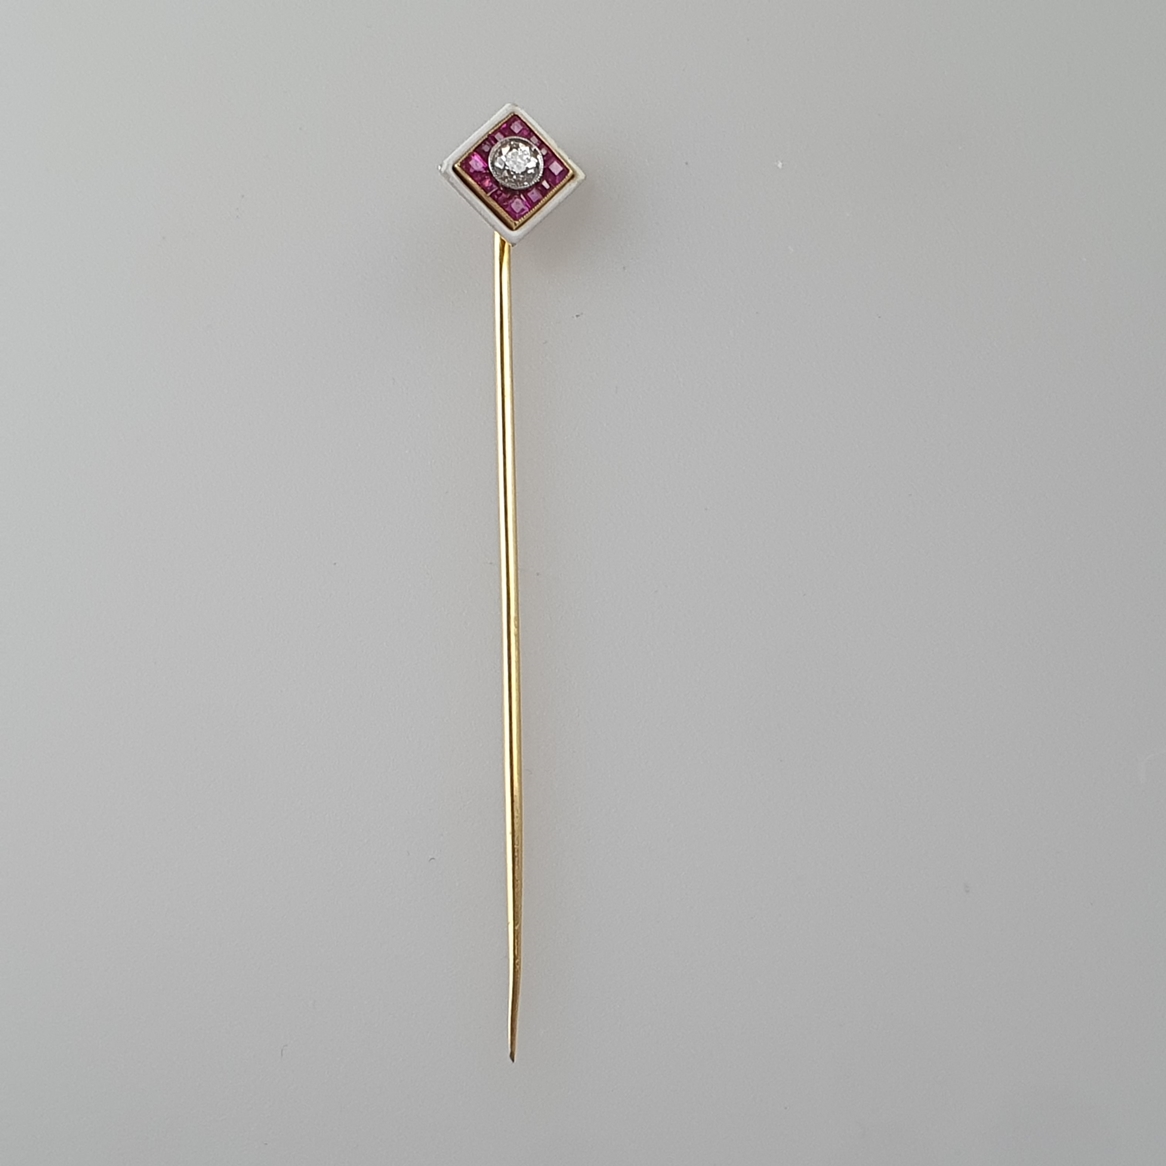 Emaillierte Krawattennadel mit Diamantsolitär - 14 Kt.-Gelbgold (585/000), rautenförmiger Kopf mitt - Image 2 of 6